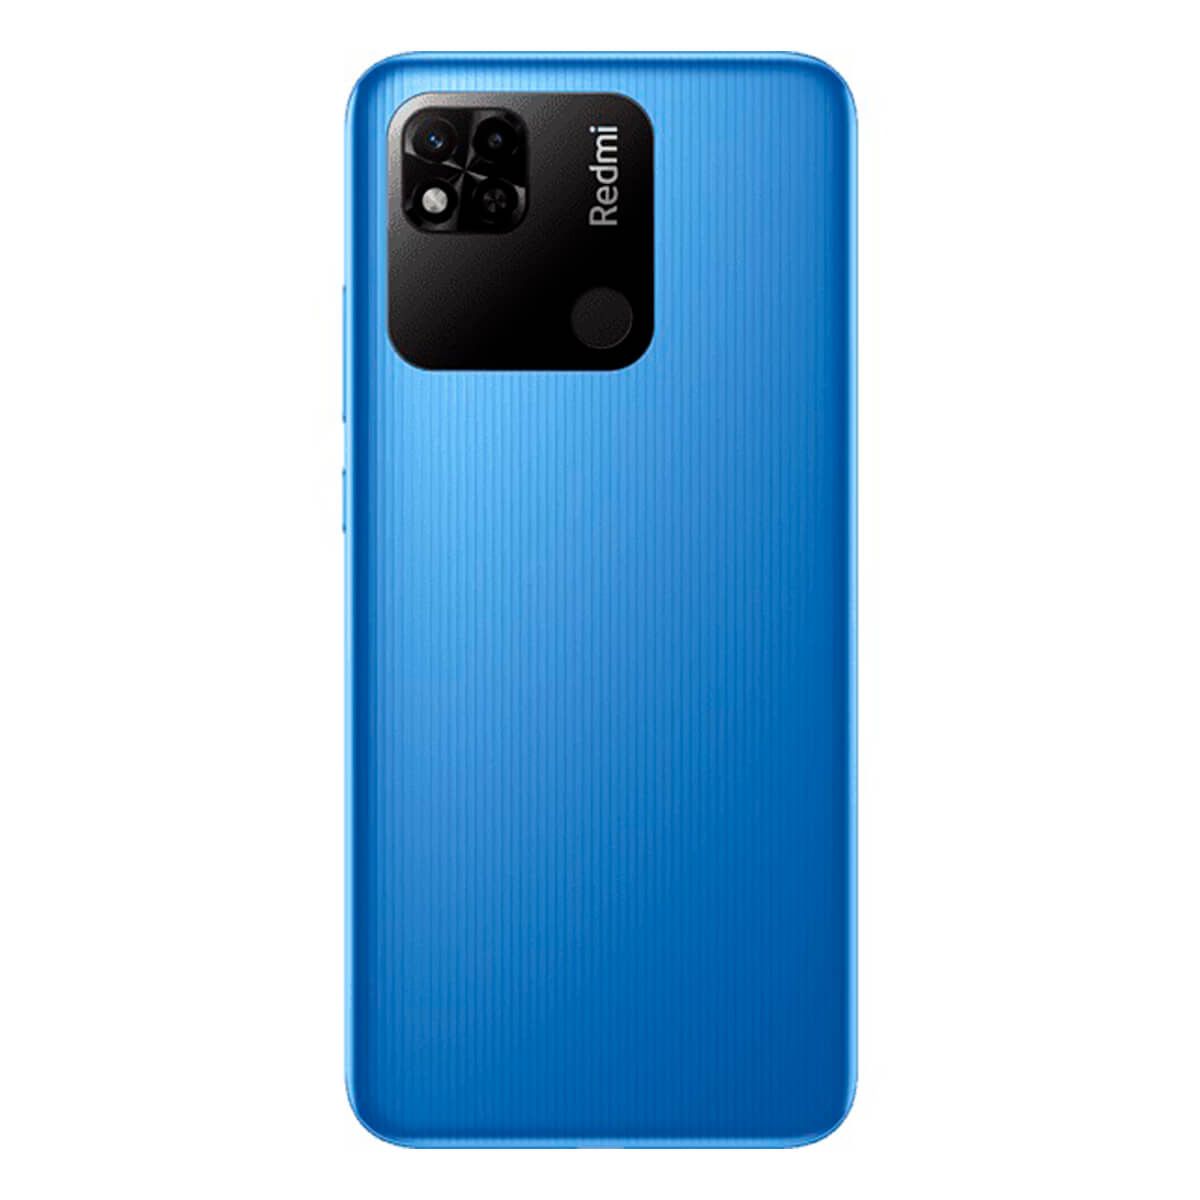 Xiaomi Redmi 10A 4G 2Go/32Go Bleu Ciel (Bleu Ciel) Double SIM